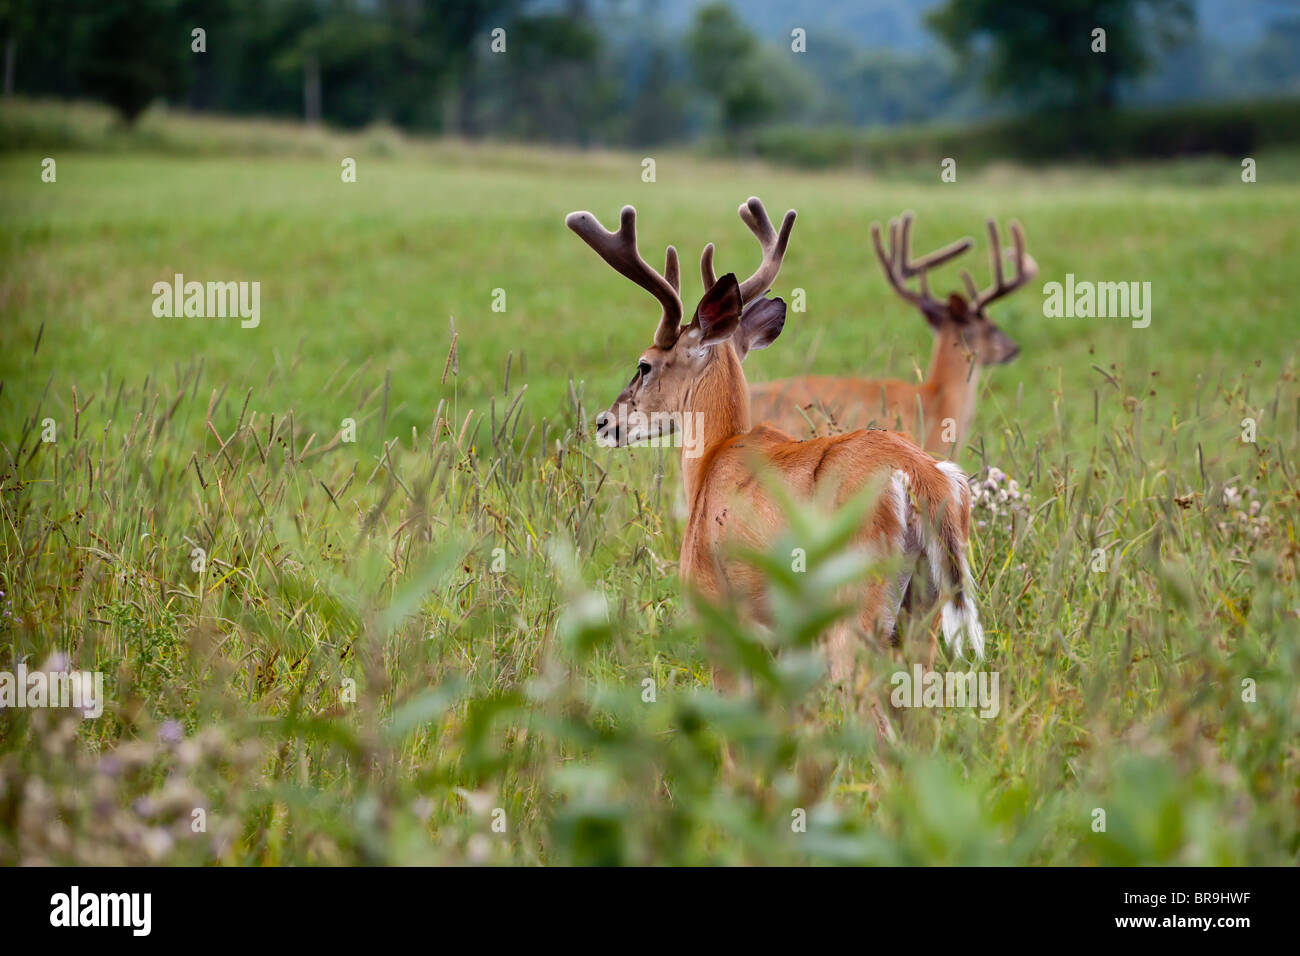 Two male deer in a field. Stock Photo